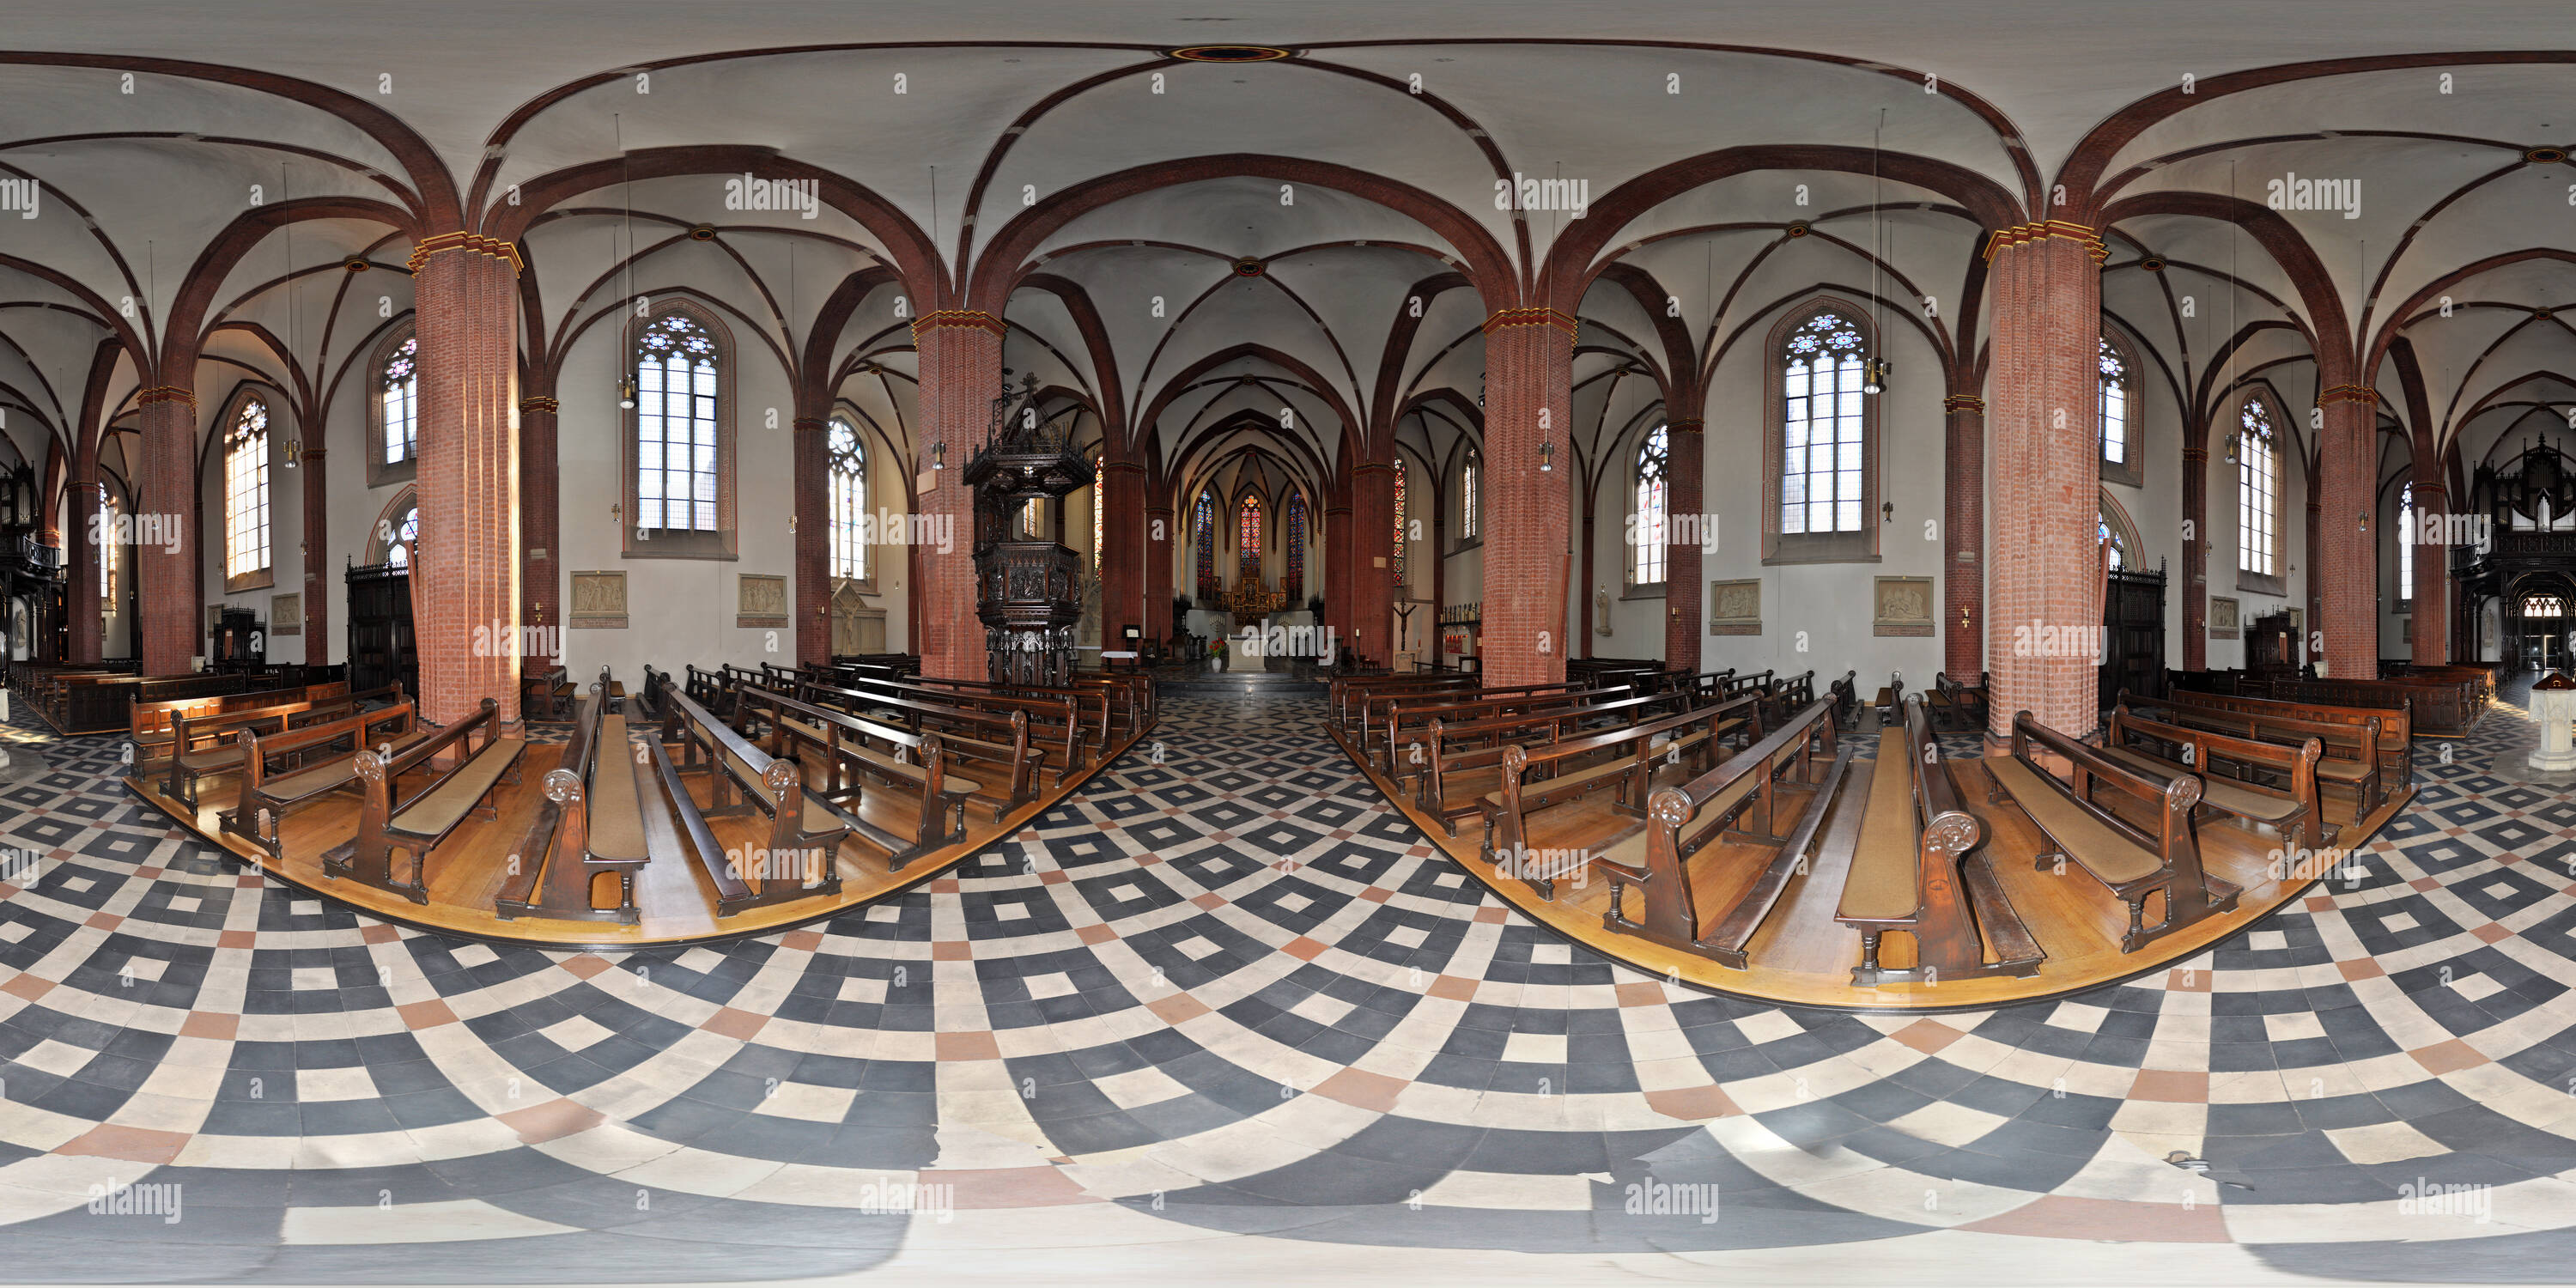 Visualizzazione panoramica a 360 gradi di Wallfahrtskirche San Sisto in Haltern am See